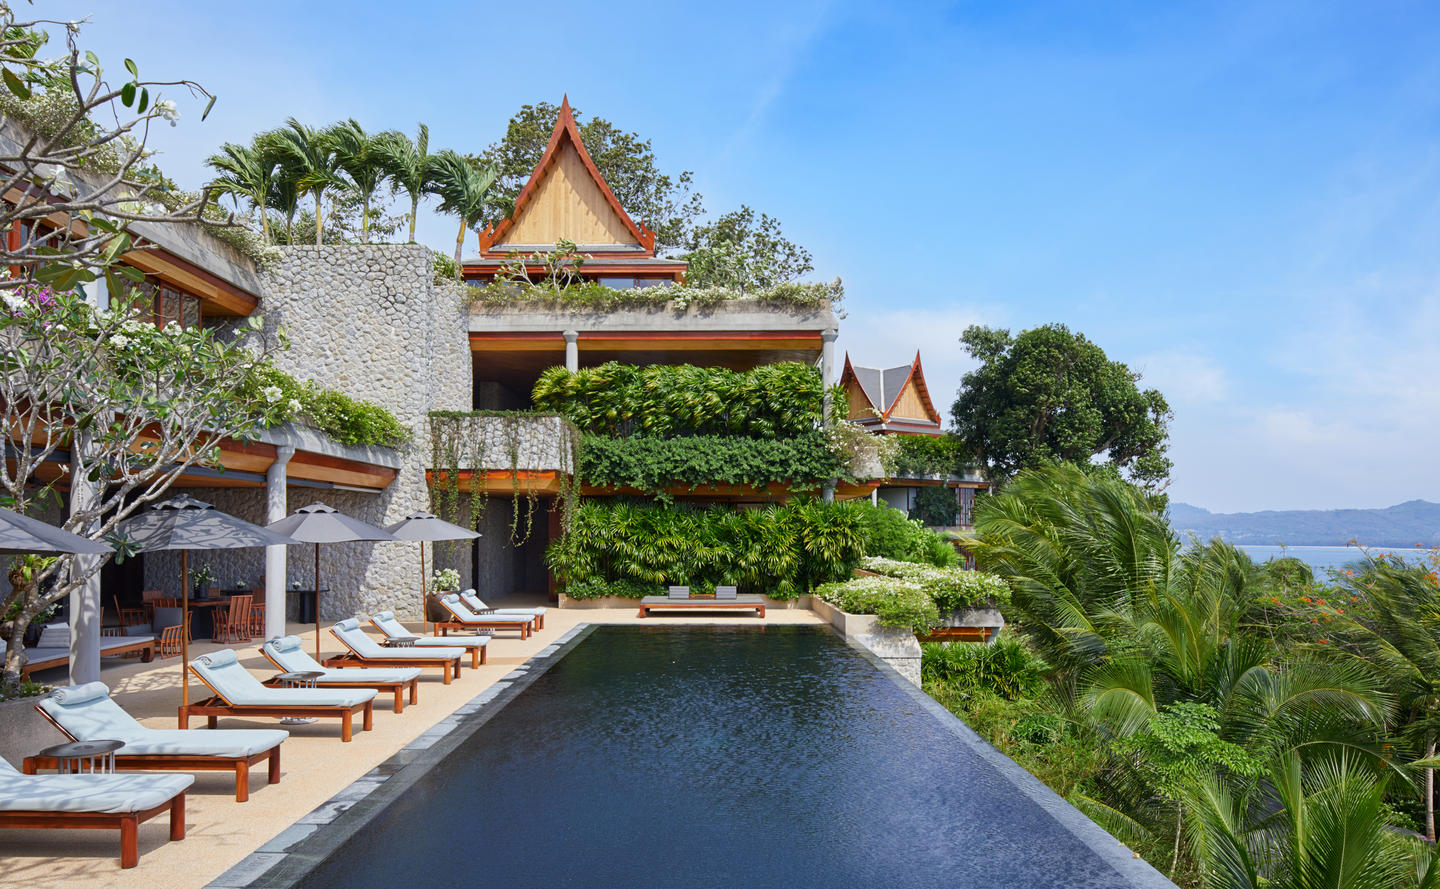 Amanpuri,Thailand - Accommodation, Villa 47, 6-Bedroom Ocean Villa, Pool.jpg